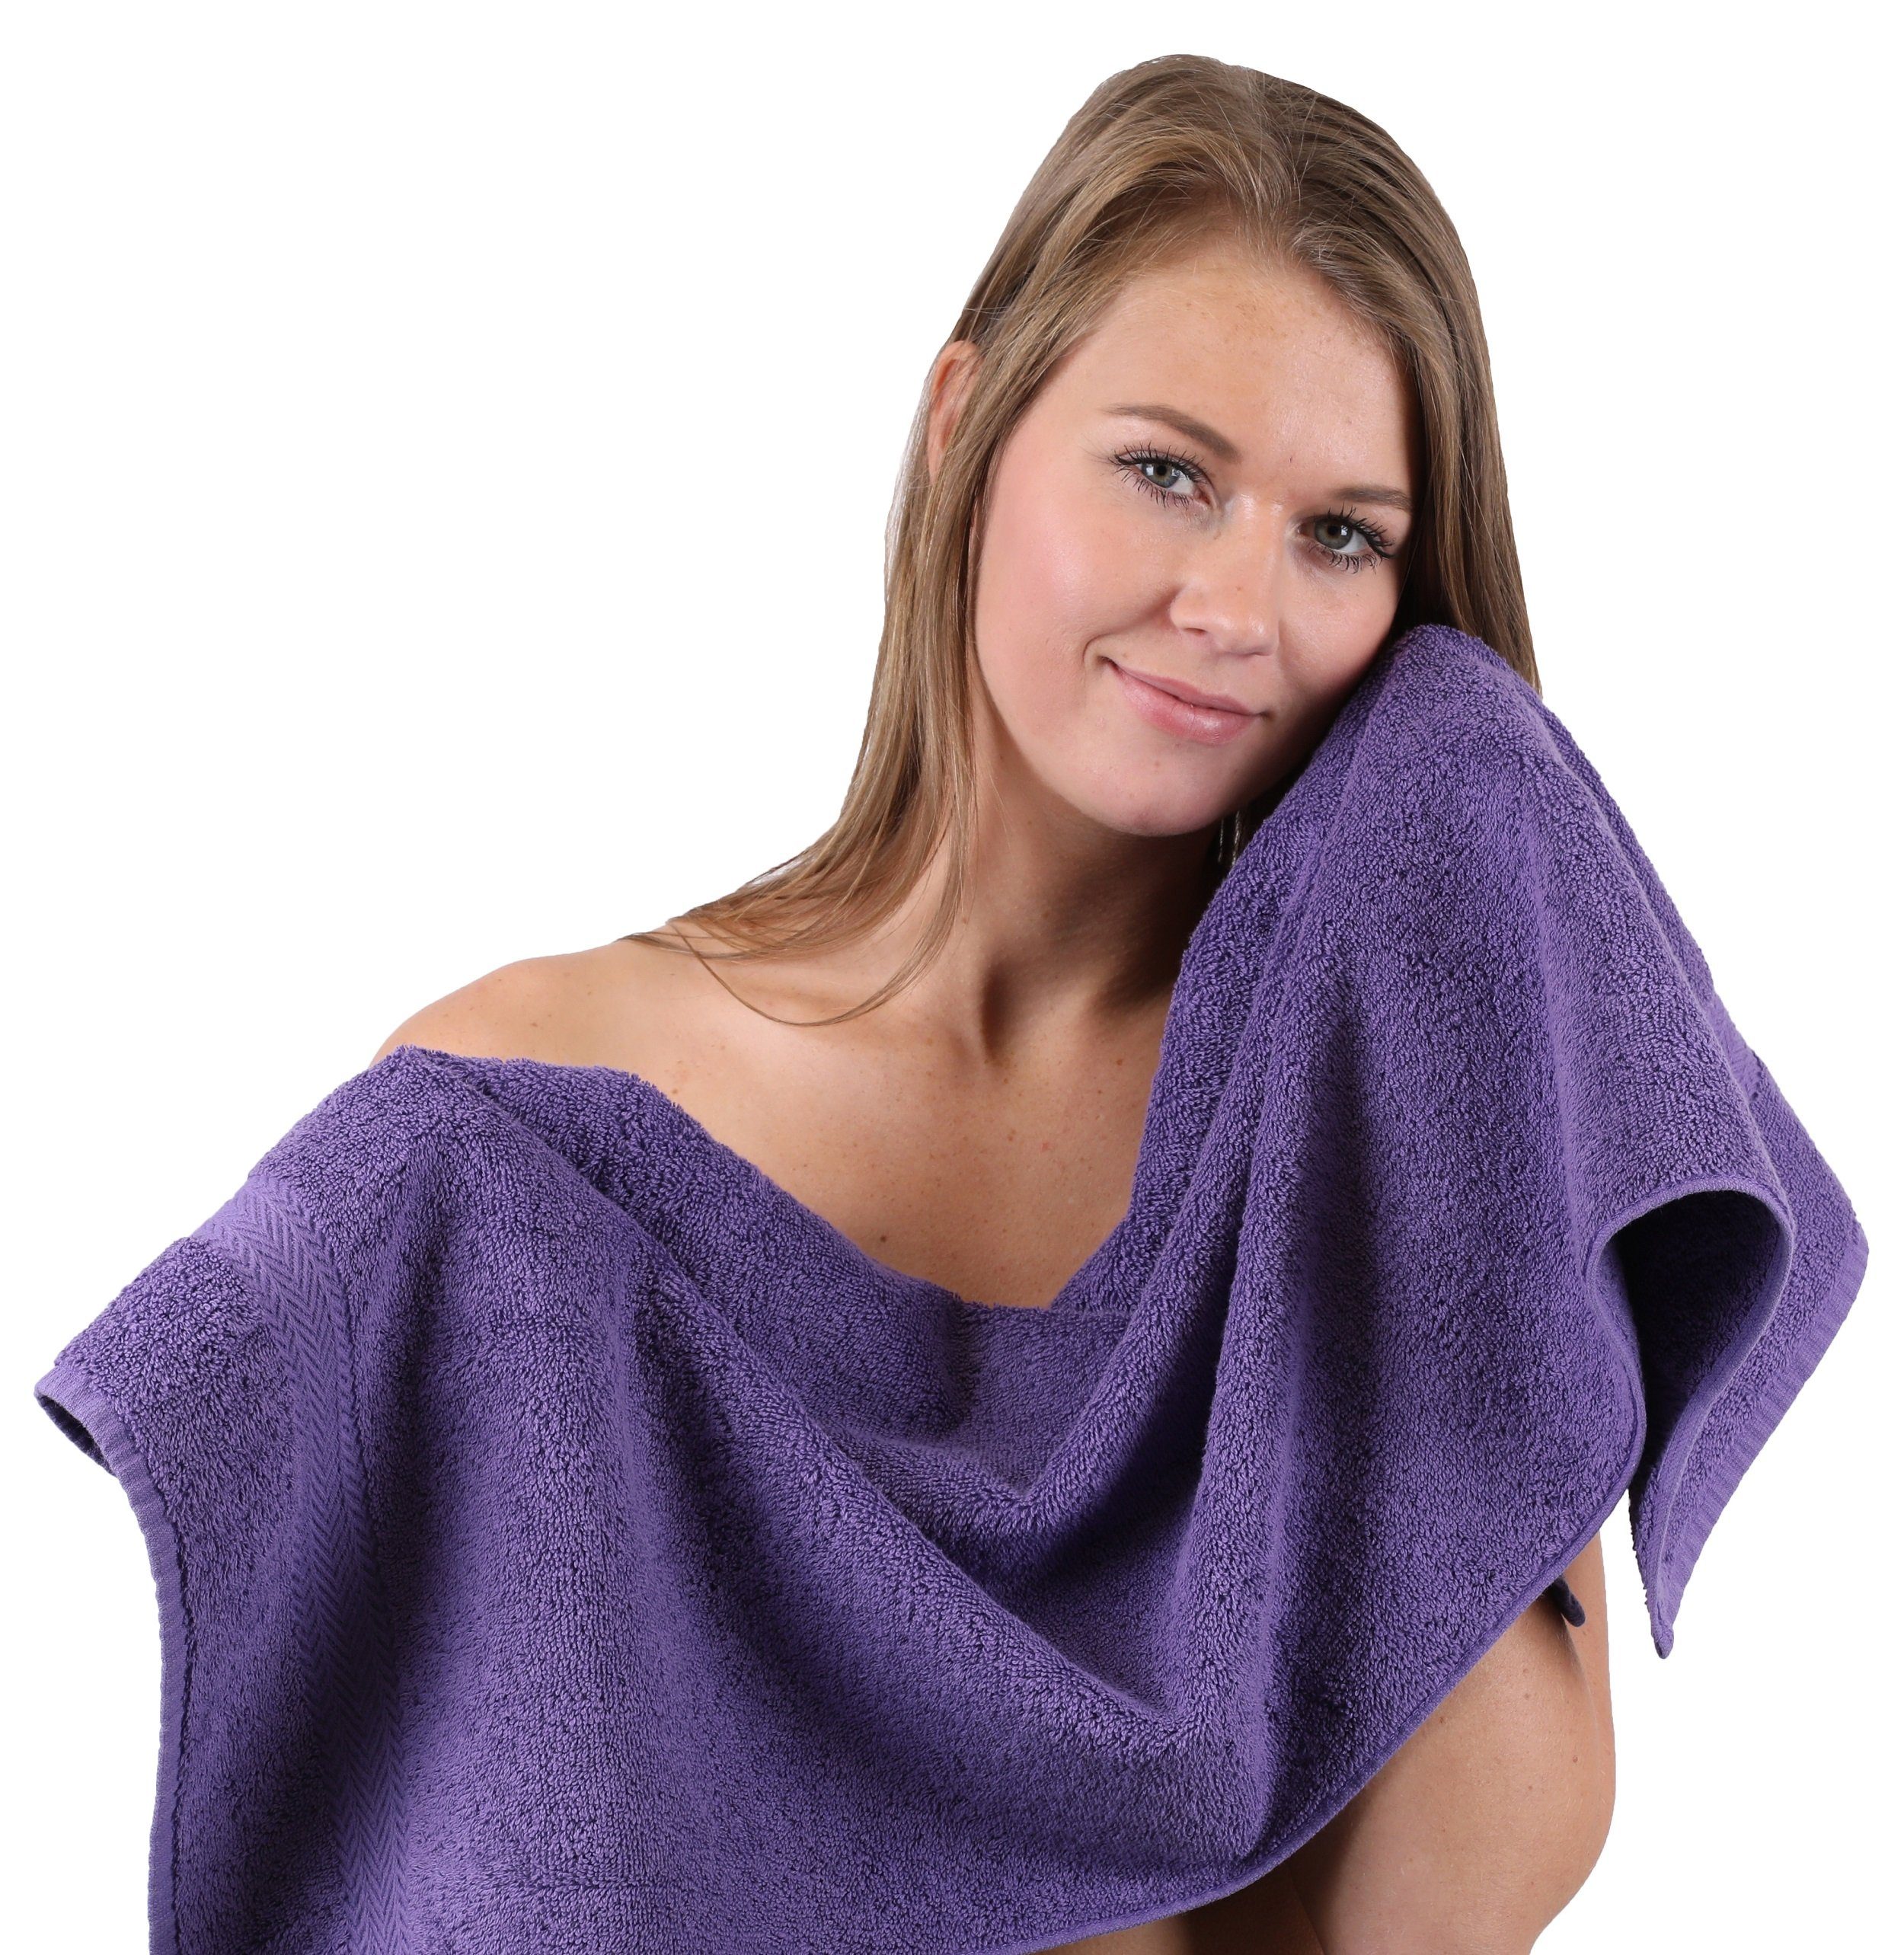 Handtuch Premium aumwolle, 10-TLG. B Handtuch-Set Set Farbe Betz Orange Lila, (10-tlg) 100% &